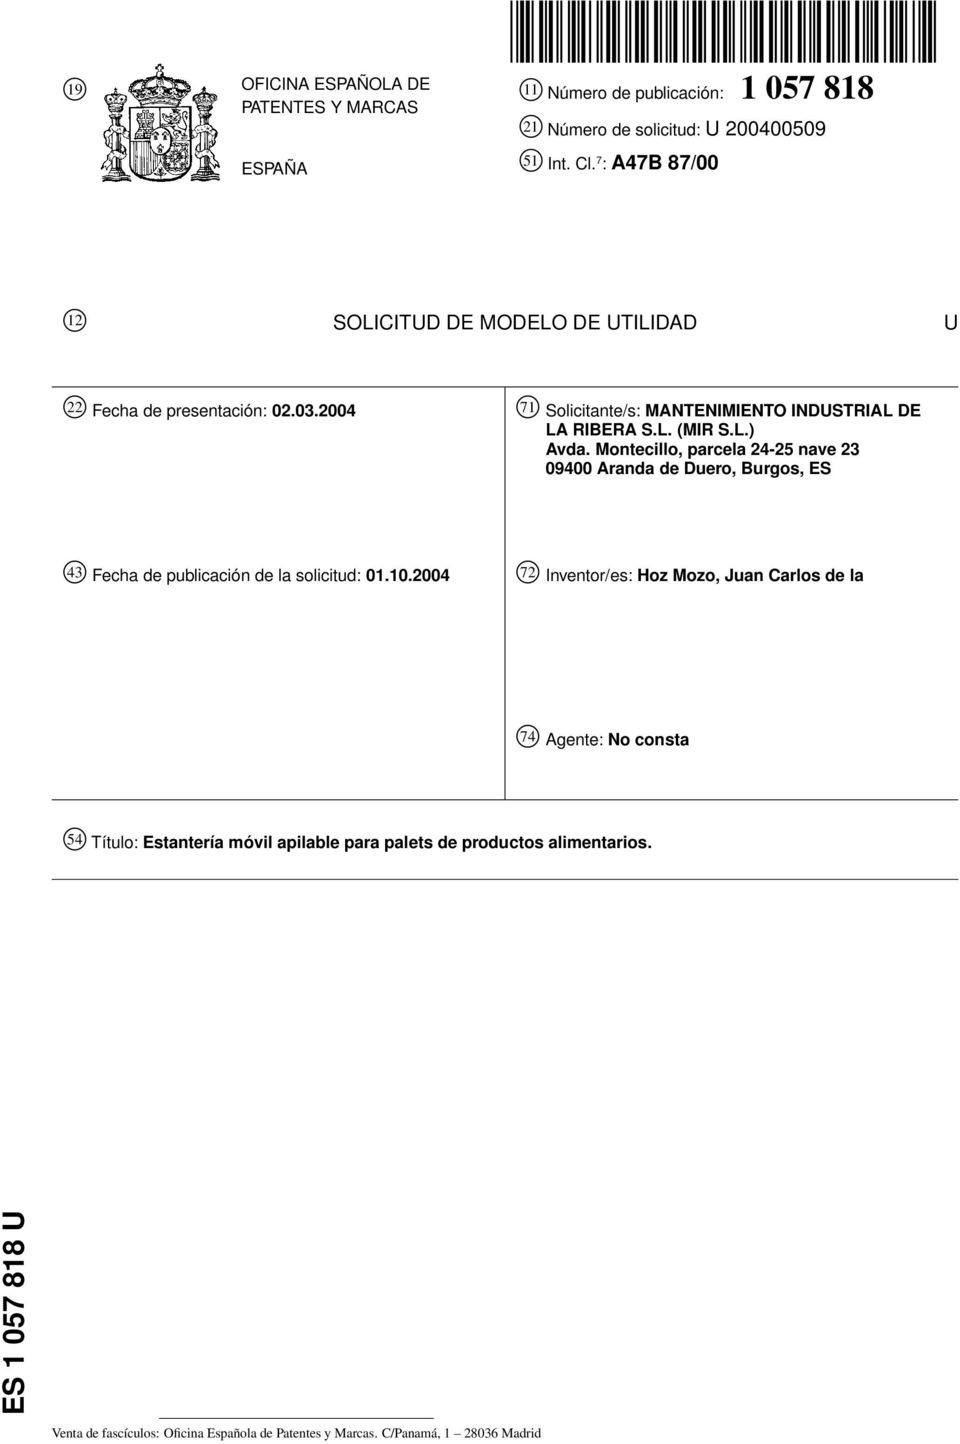 Montecillo, parcela 24-25 nave 23 09400 Aranda de Duero, Burgos, ES 43 Fecha de publicación de la solicitud: 01.10.